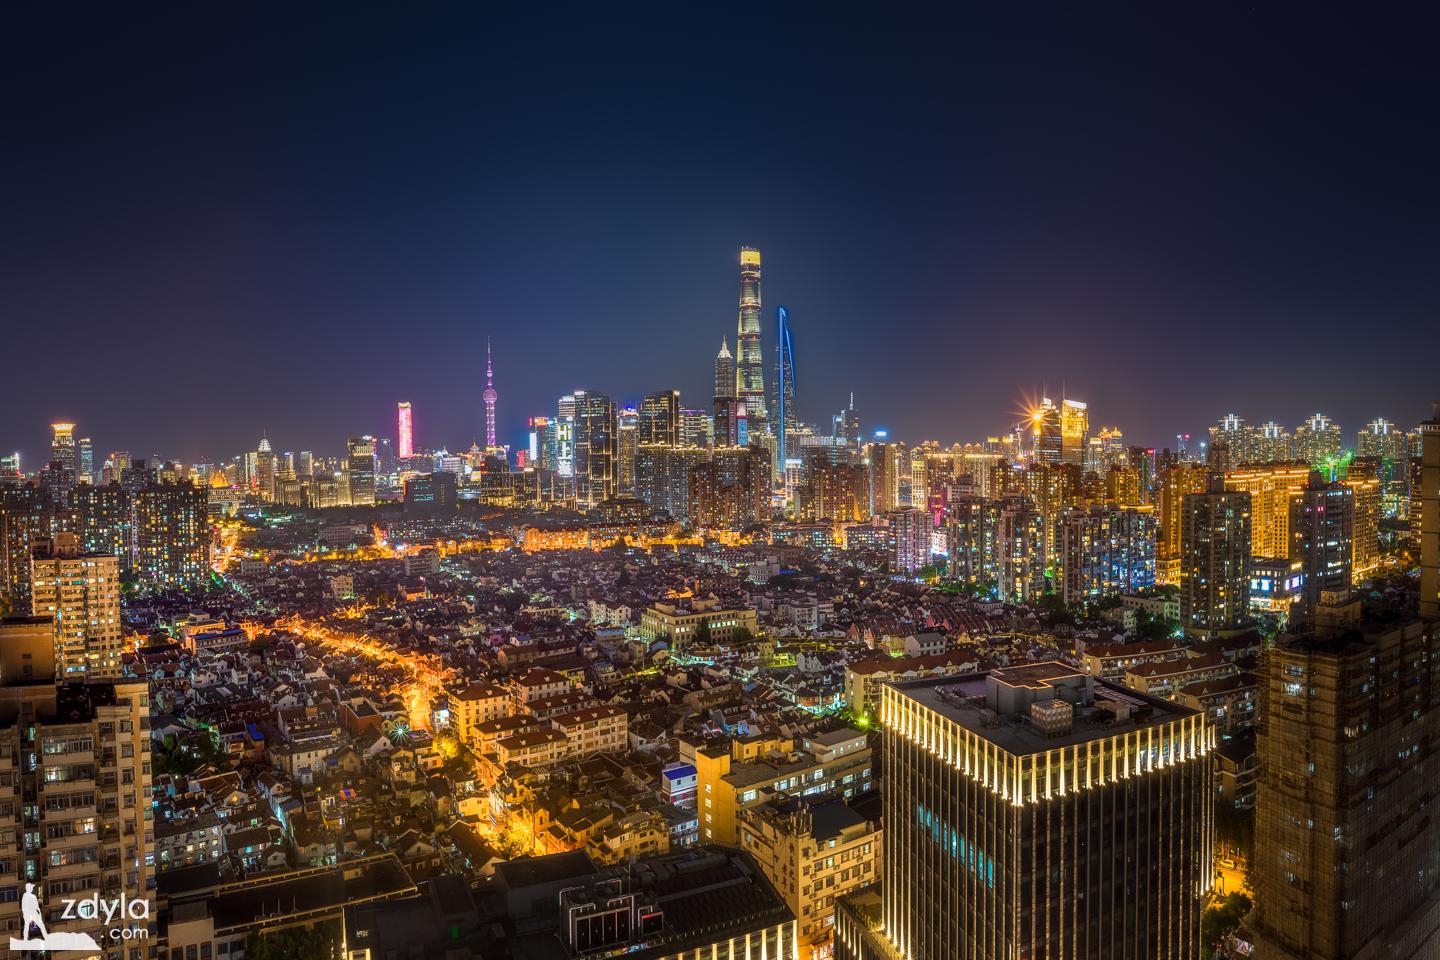 Night view of Shanghai Xiaonanmen